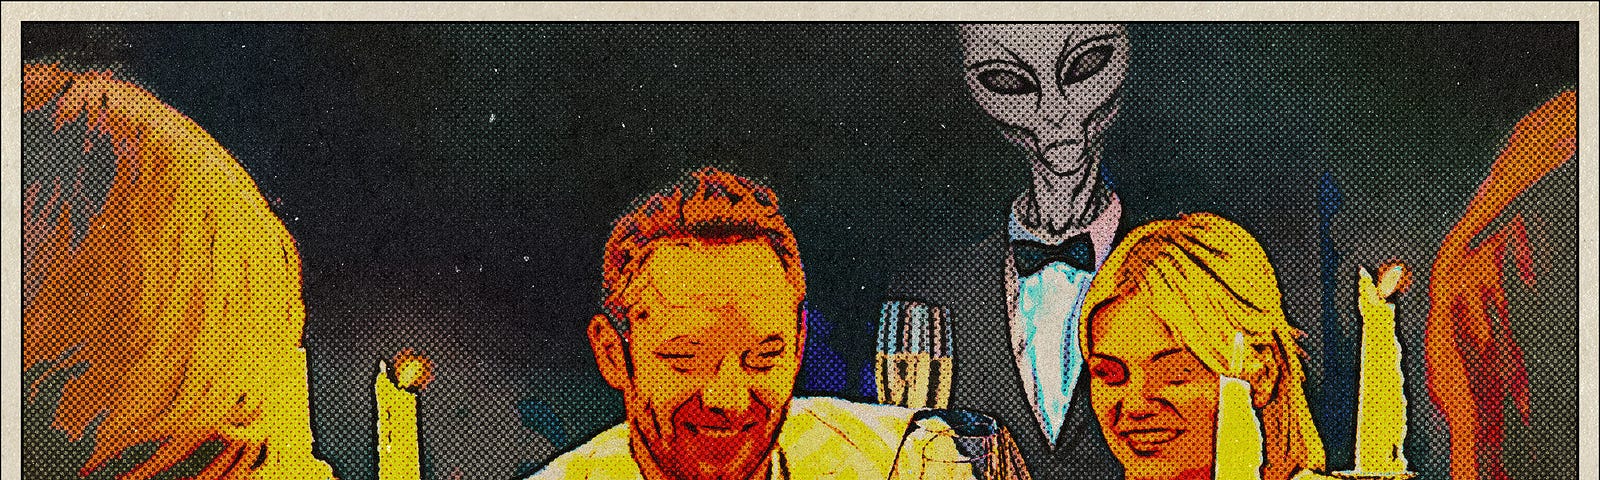 Alien waiter serves celebrating couples